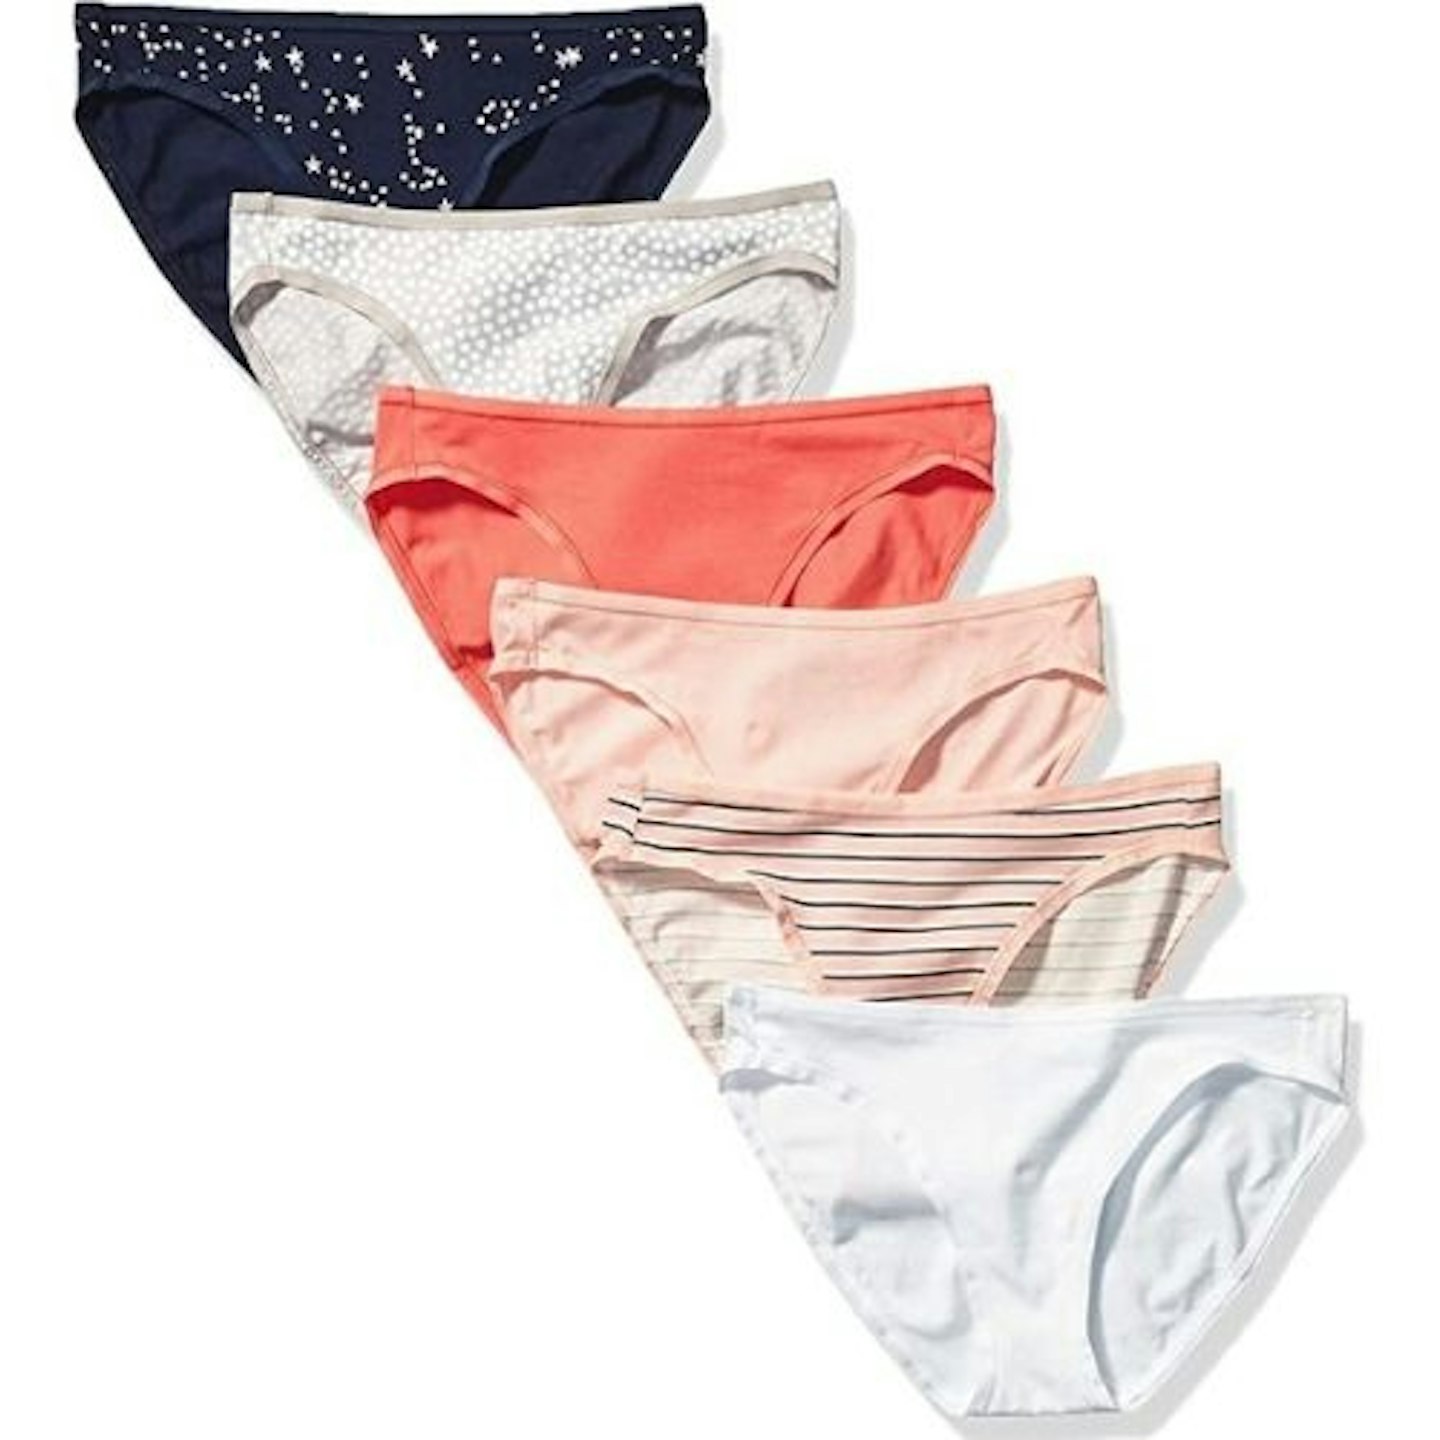 Amazon Essentials Women's Cotton Bikini Brief Knickers